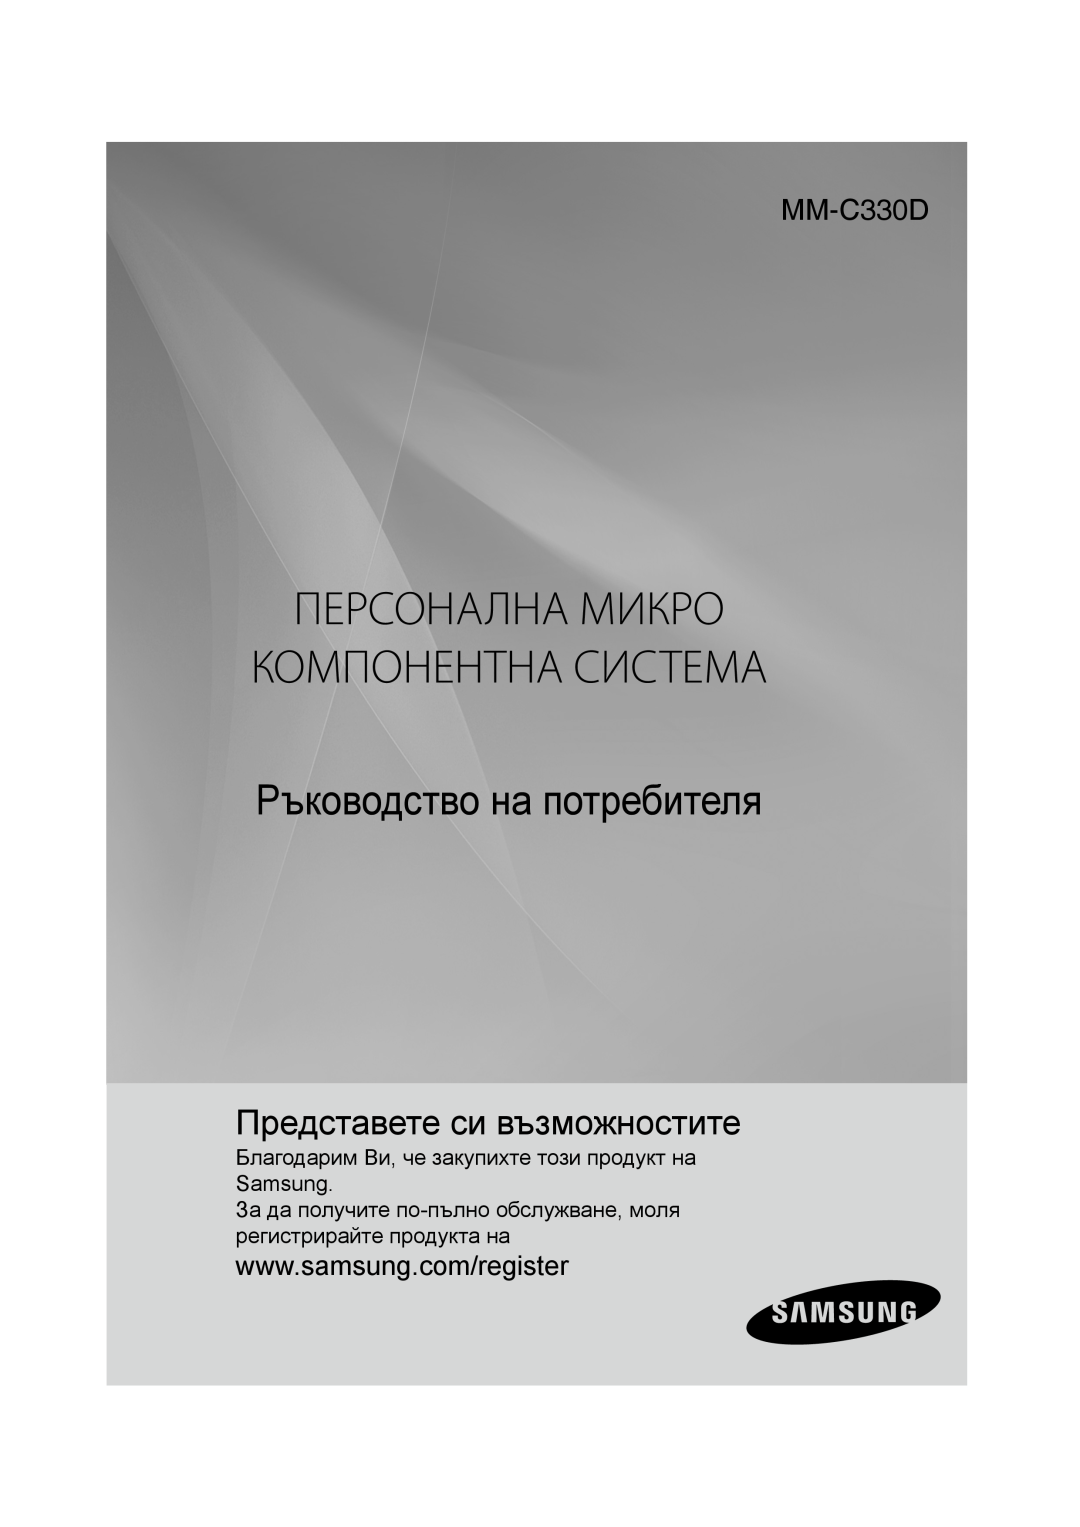 Samsung MM-C330D/EDC manual Персонална Микро Компонентна Система, Ръководство на потребителя, Представете си възможностите 